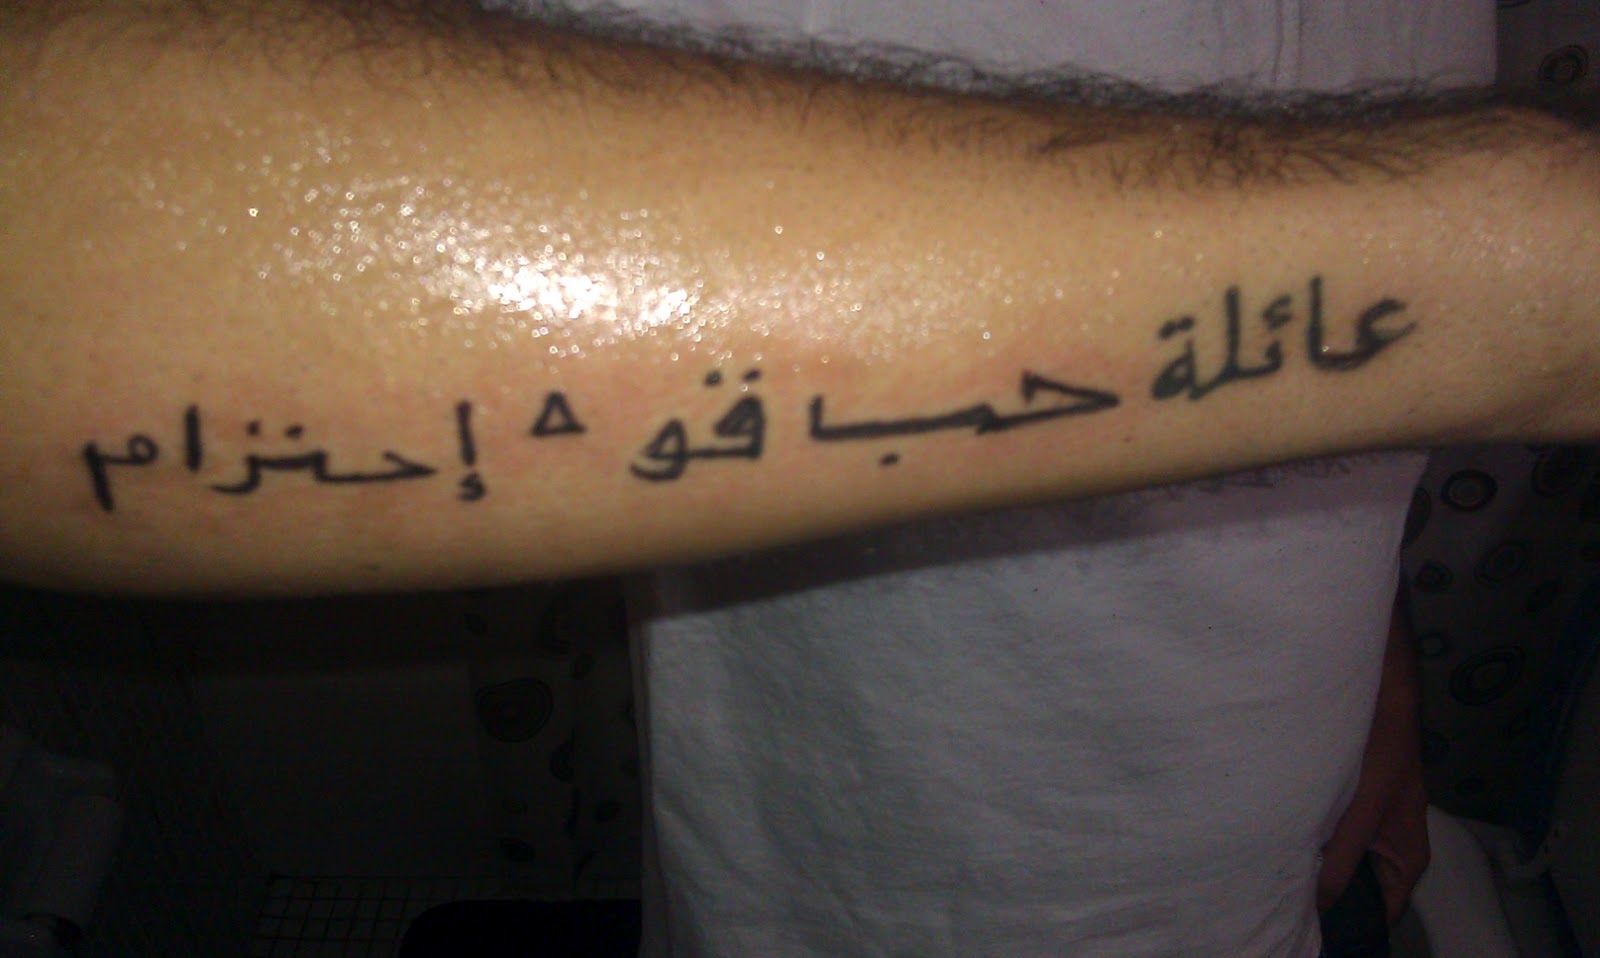 Arabian tattoo | Word tattoos, Tattoos, Tattoo quotes